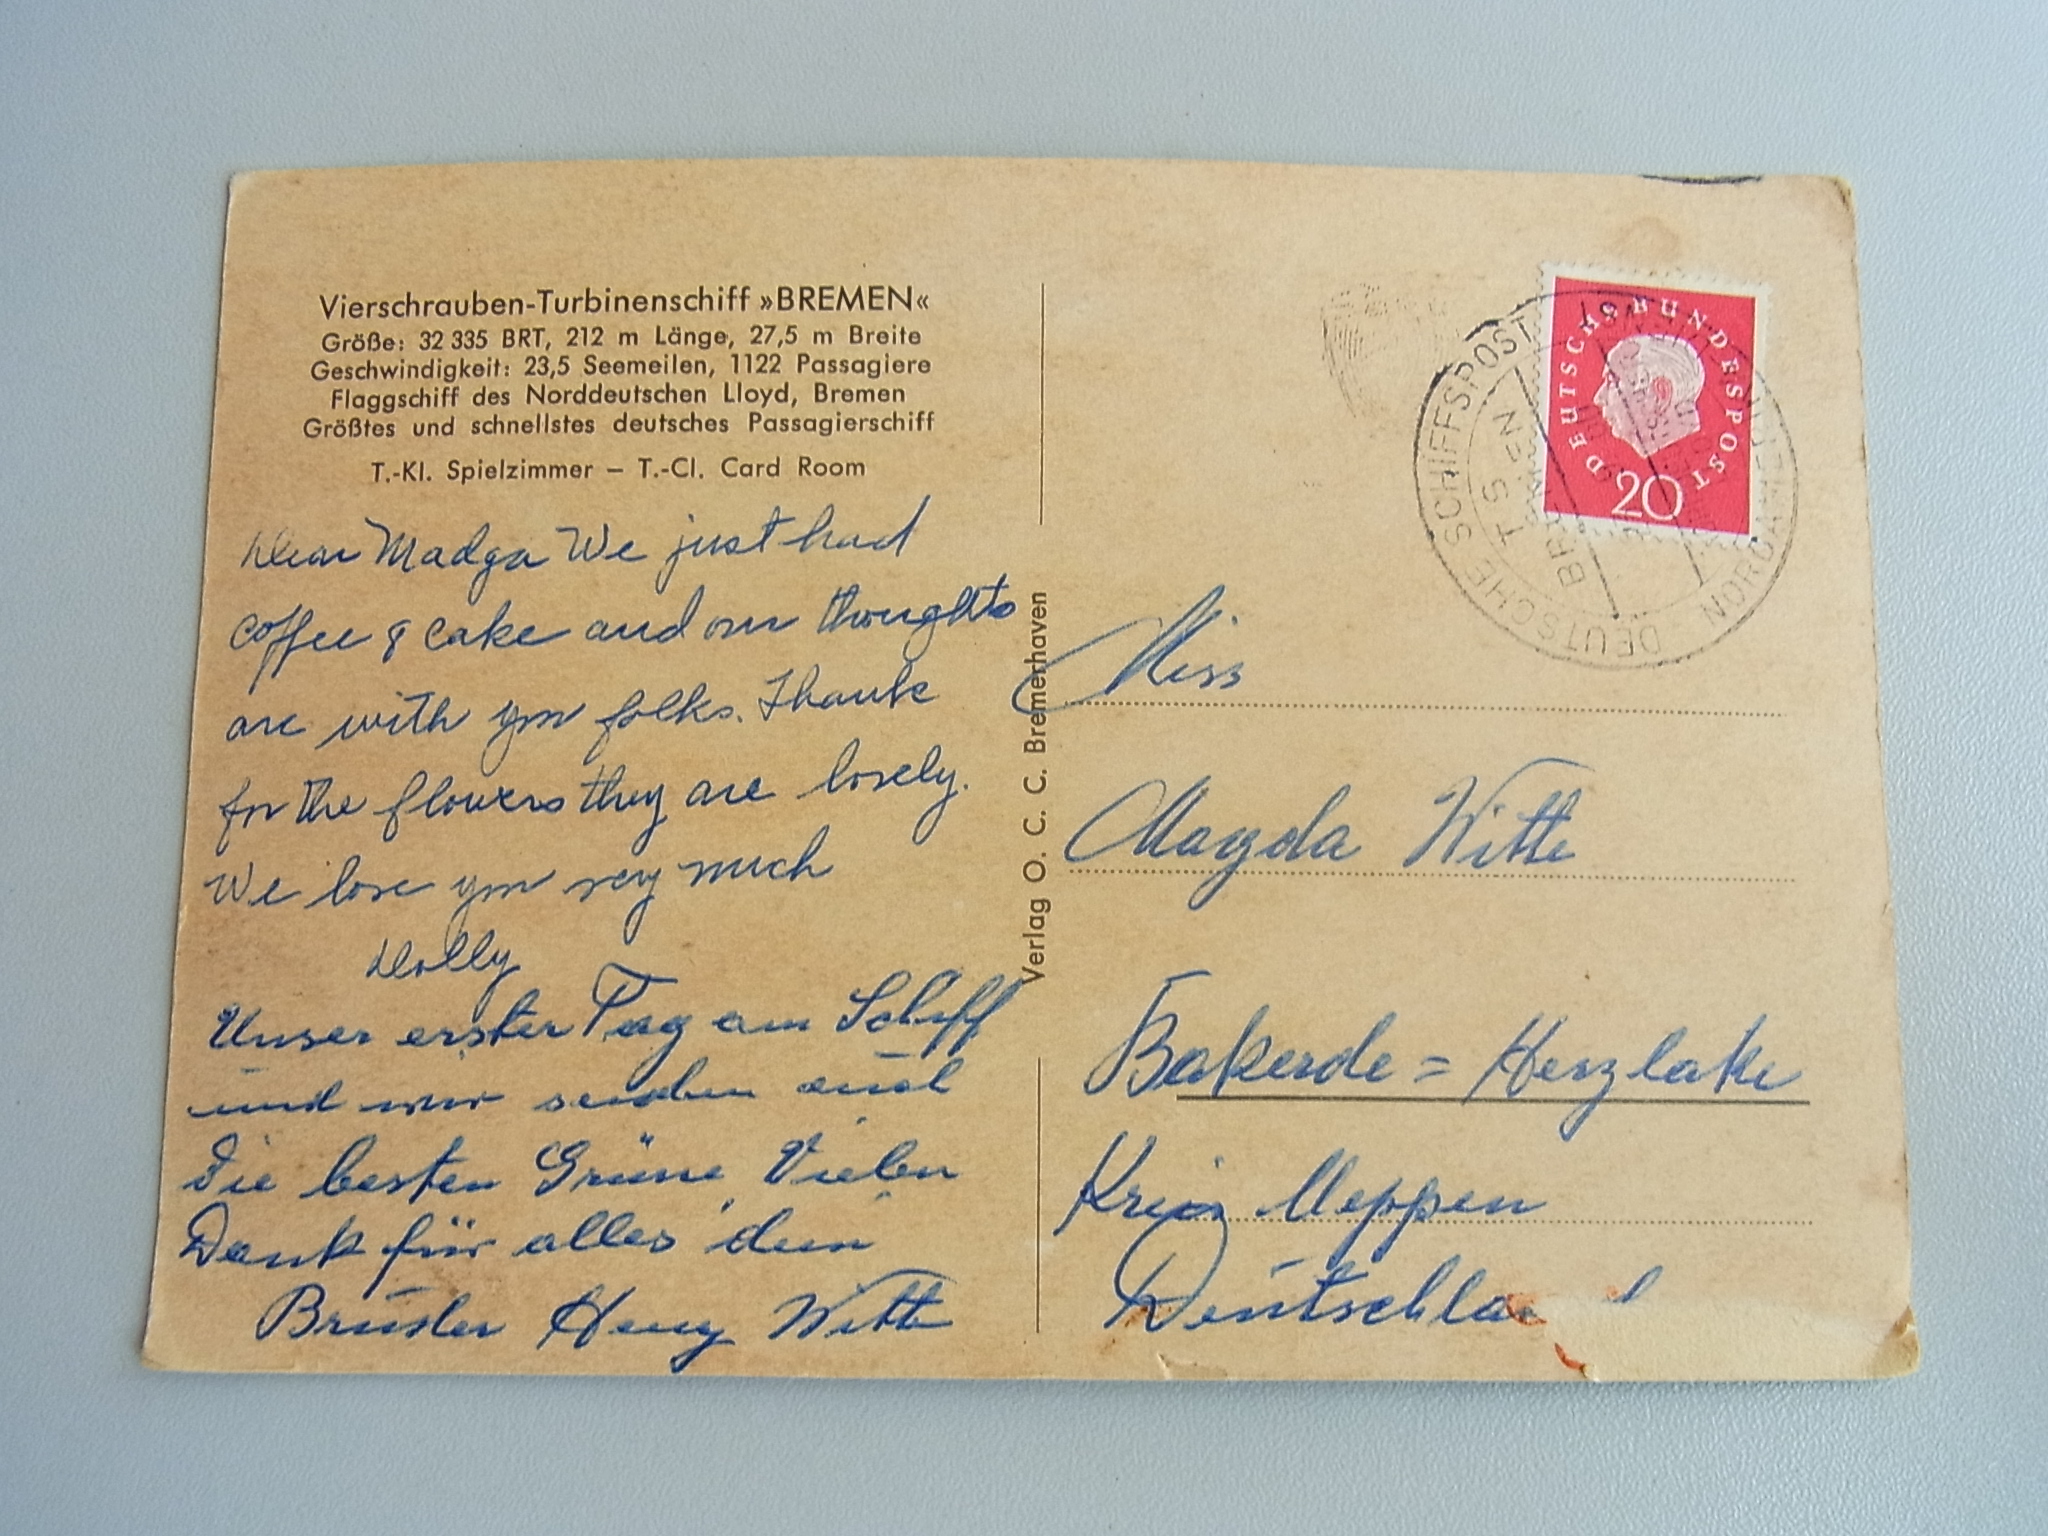 Textseite der Postkarte, mit Poststempel vom 23.09.1960